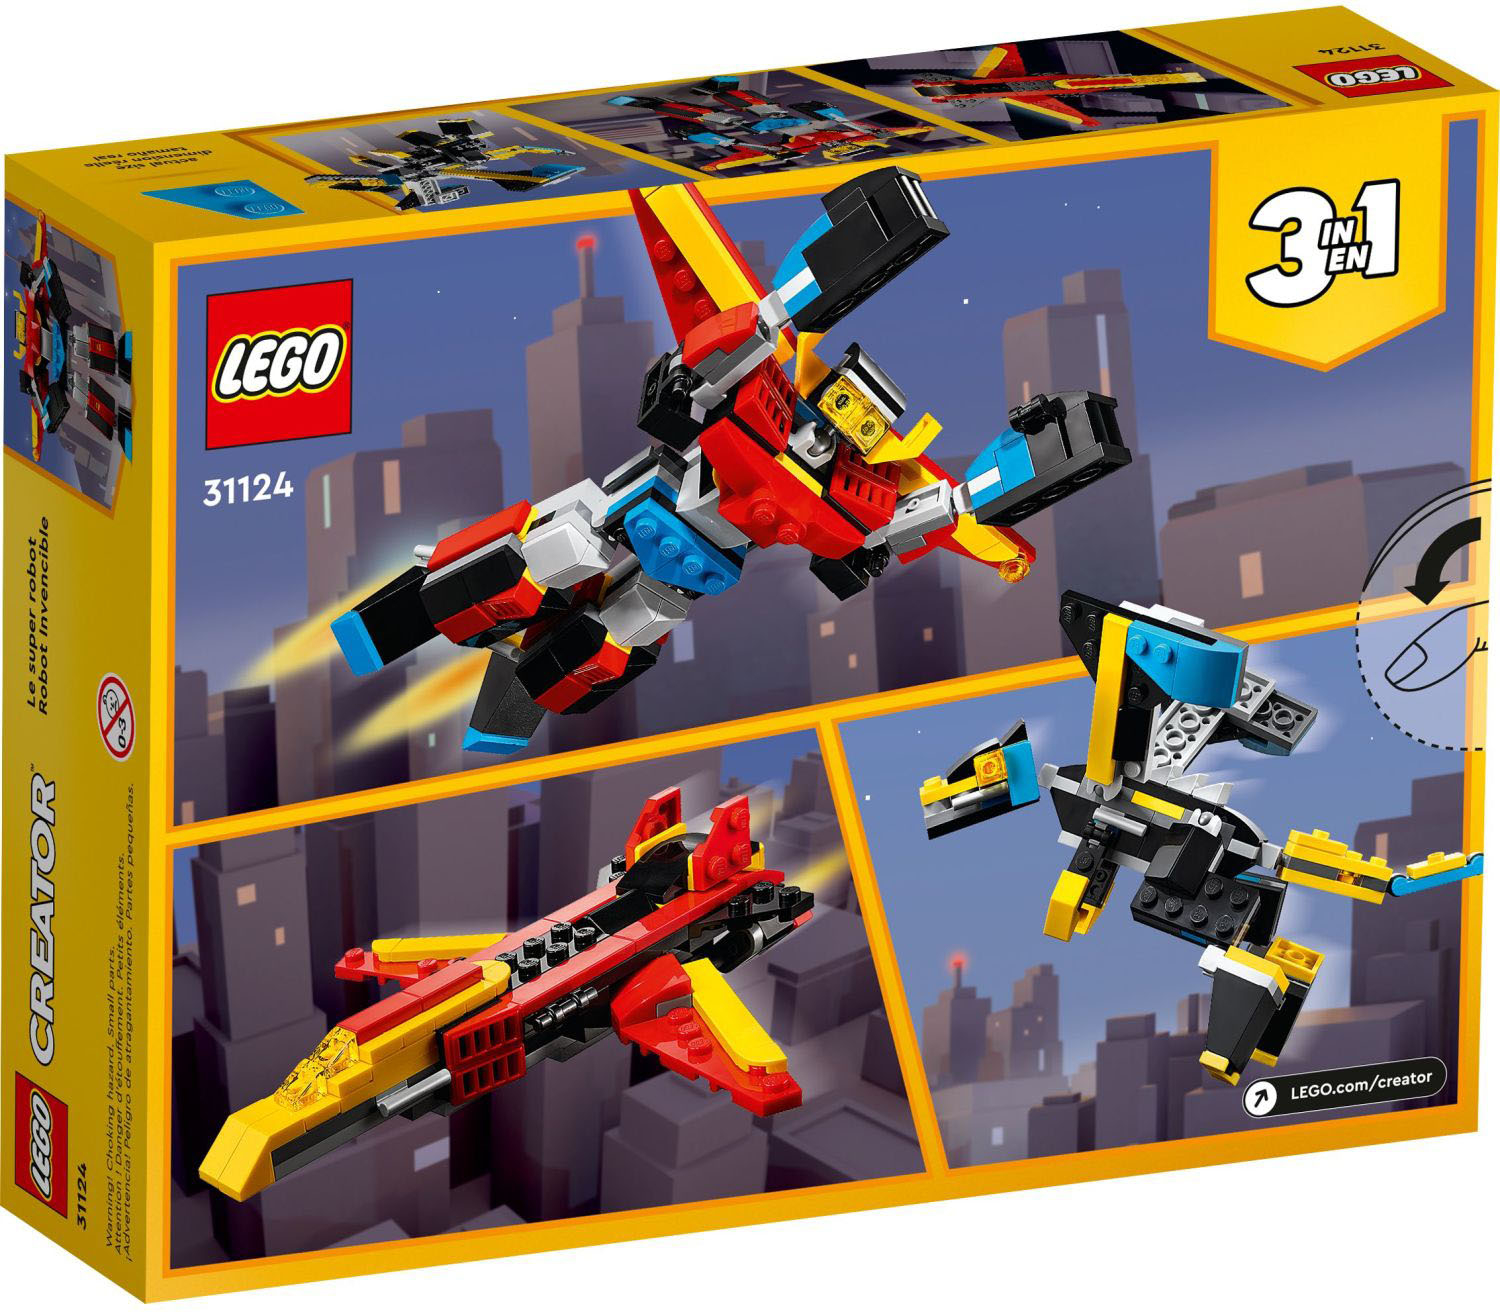 LEGO Creator 3in1 Super Robot 31124 Building Kit (159 Pieces) 6371103 -  Best Buy